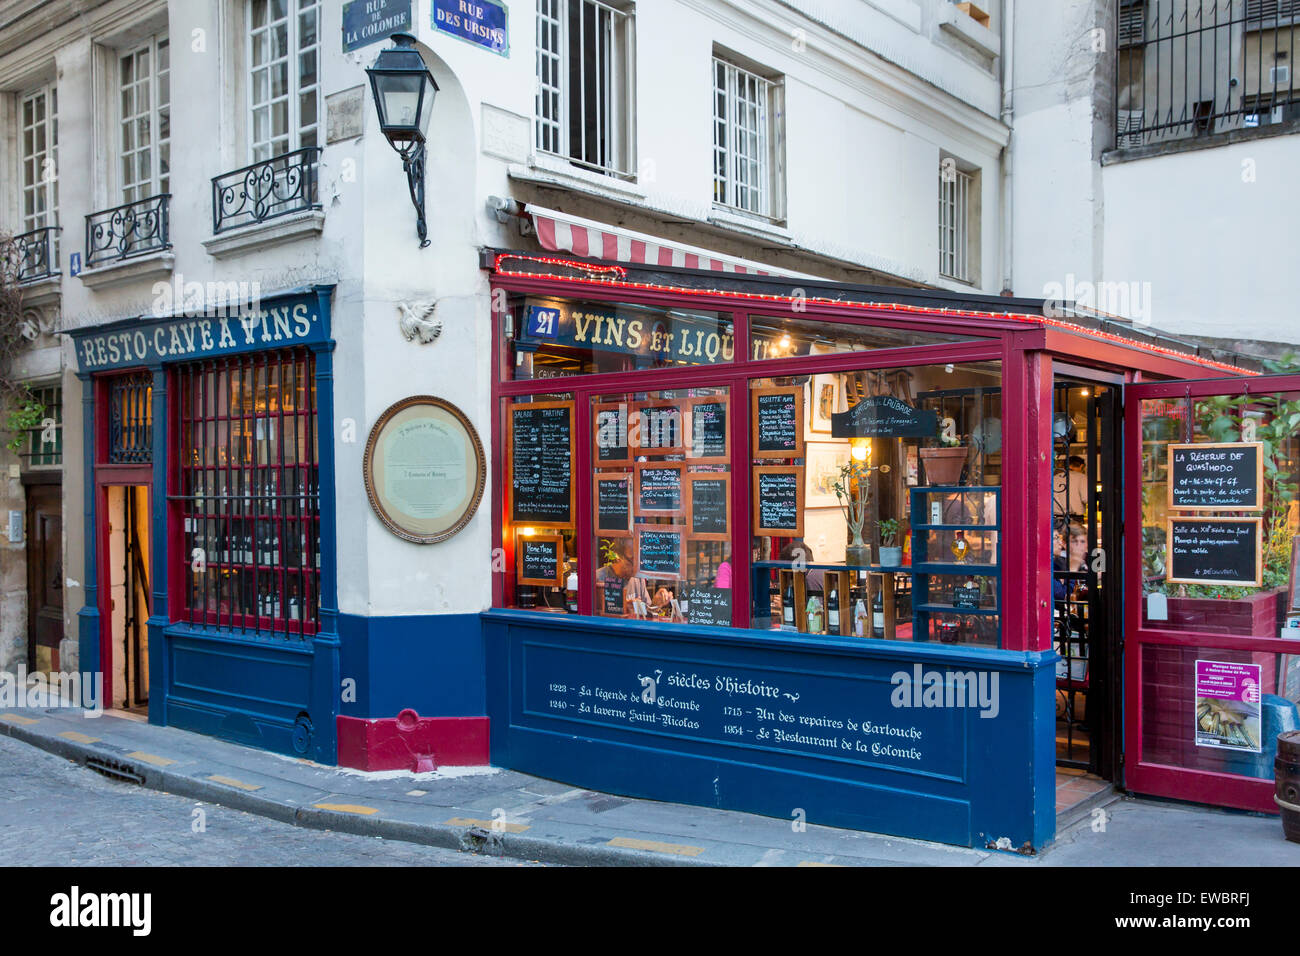 7 siècles d'histoire le long de la rue de la Colombe, un café et une cave à vin sur l'Ile de la Cité à proximité de la Cathédrale Notre Dame, Paris, France Banque D'Images